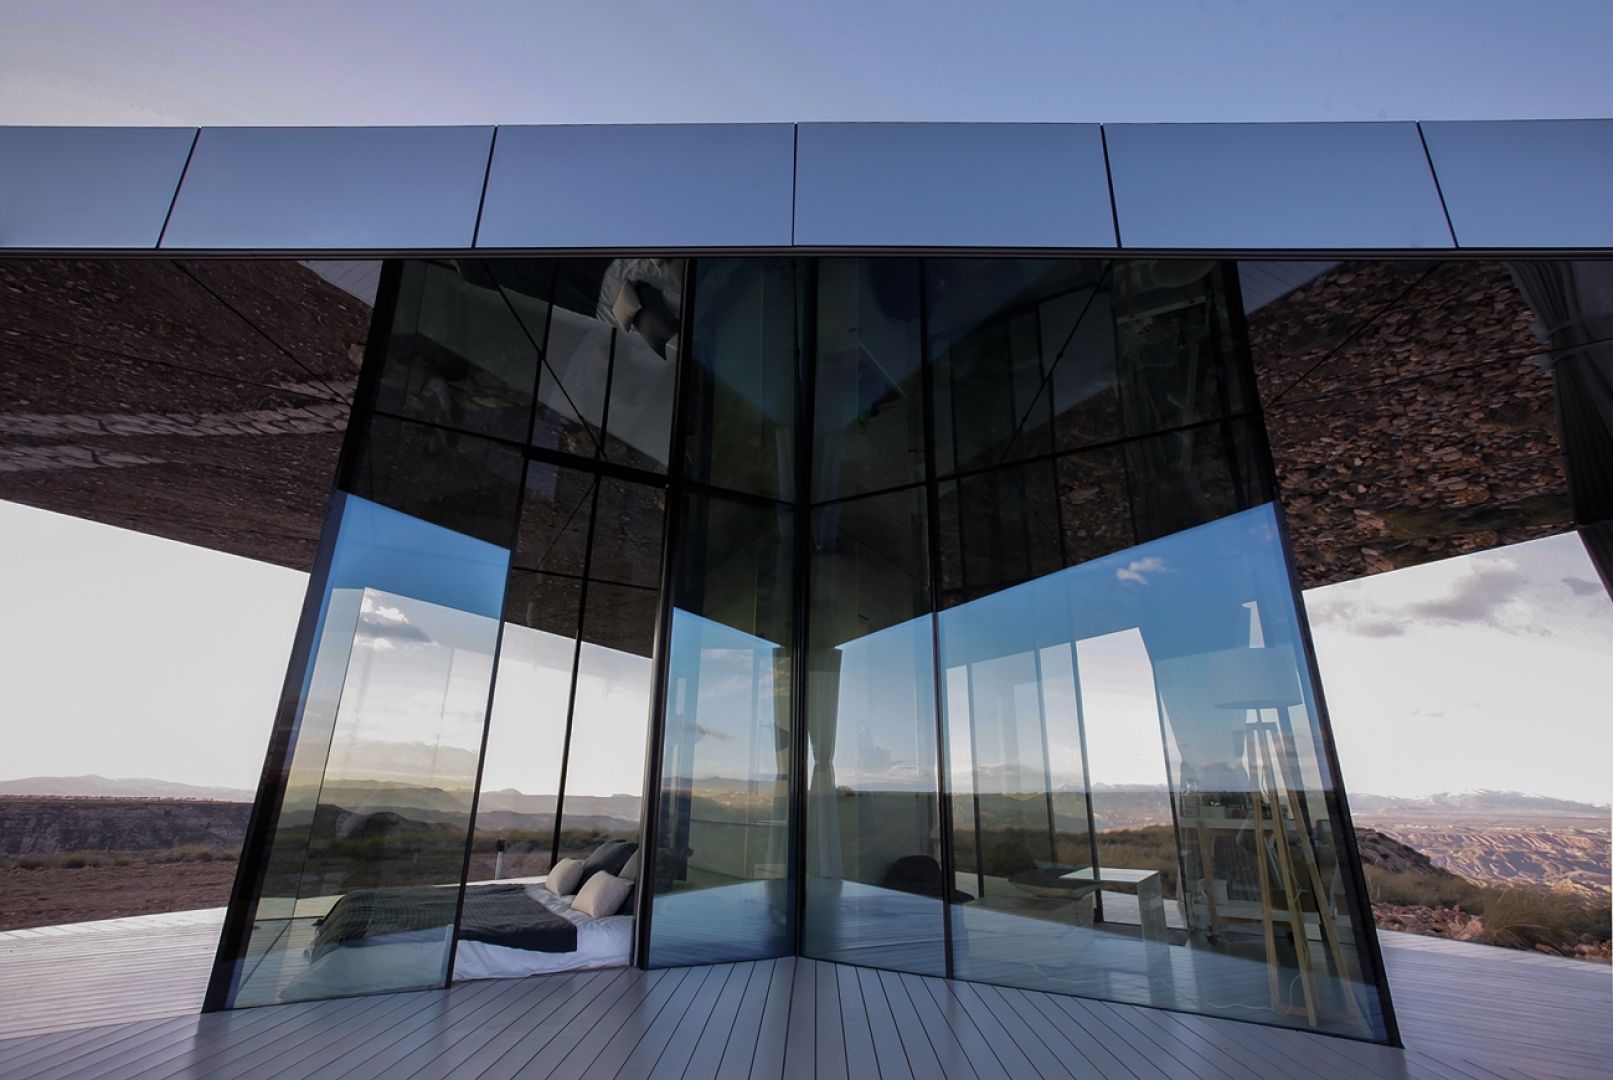 Szkło SunGuard SNX 60 wybrano do realizacji La Casa del Desierto (Dom na pustyni). Fot. Guardian Glass, LLC, ©Gonzalo Botet